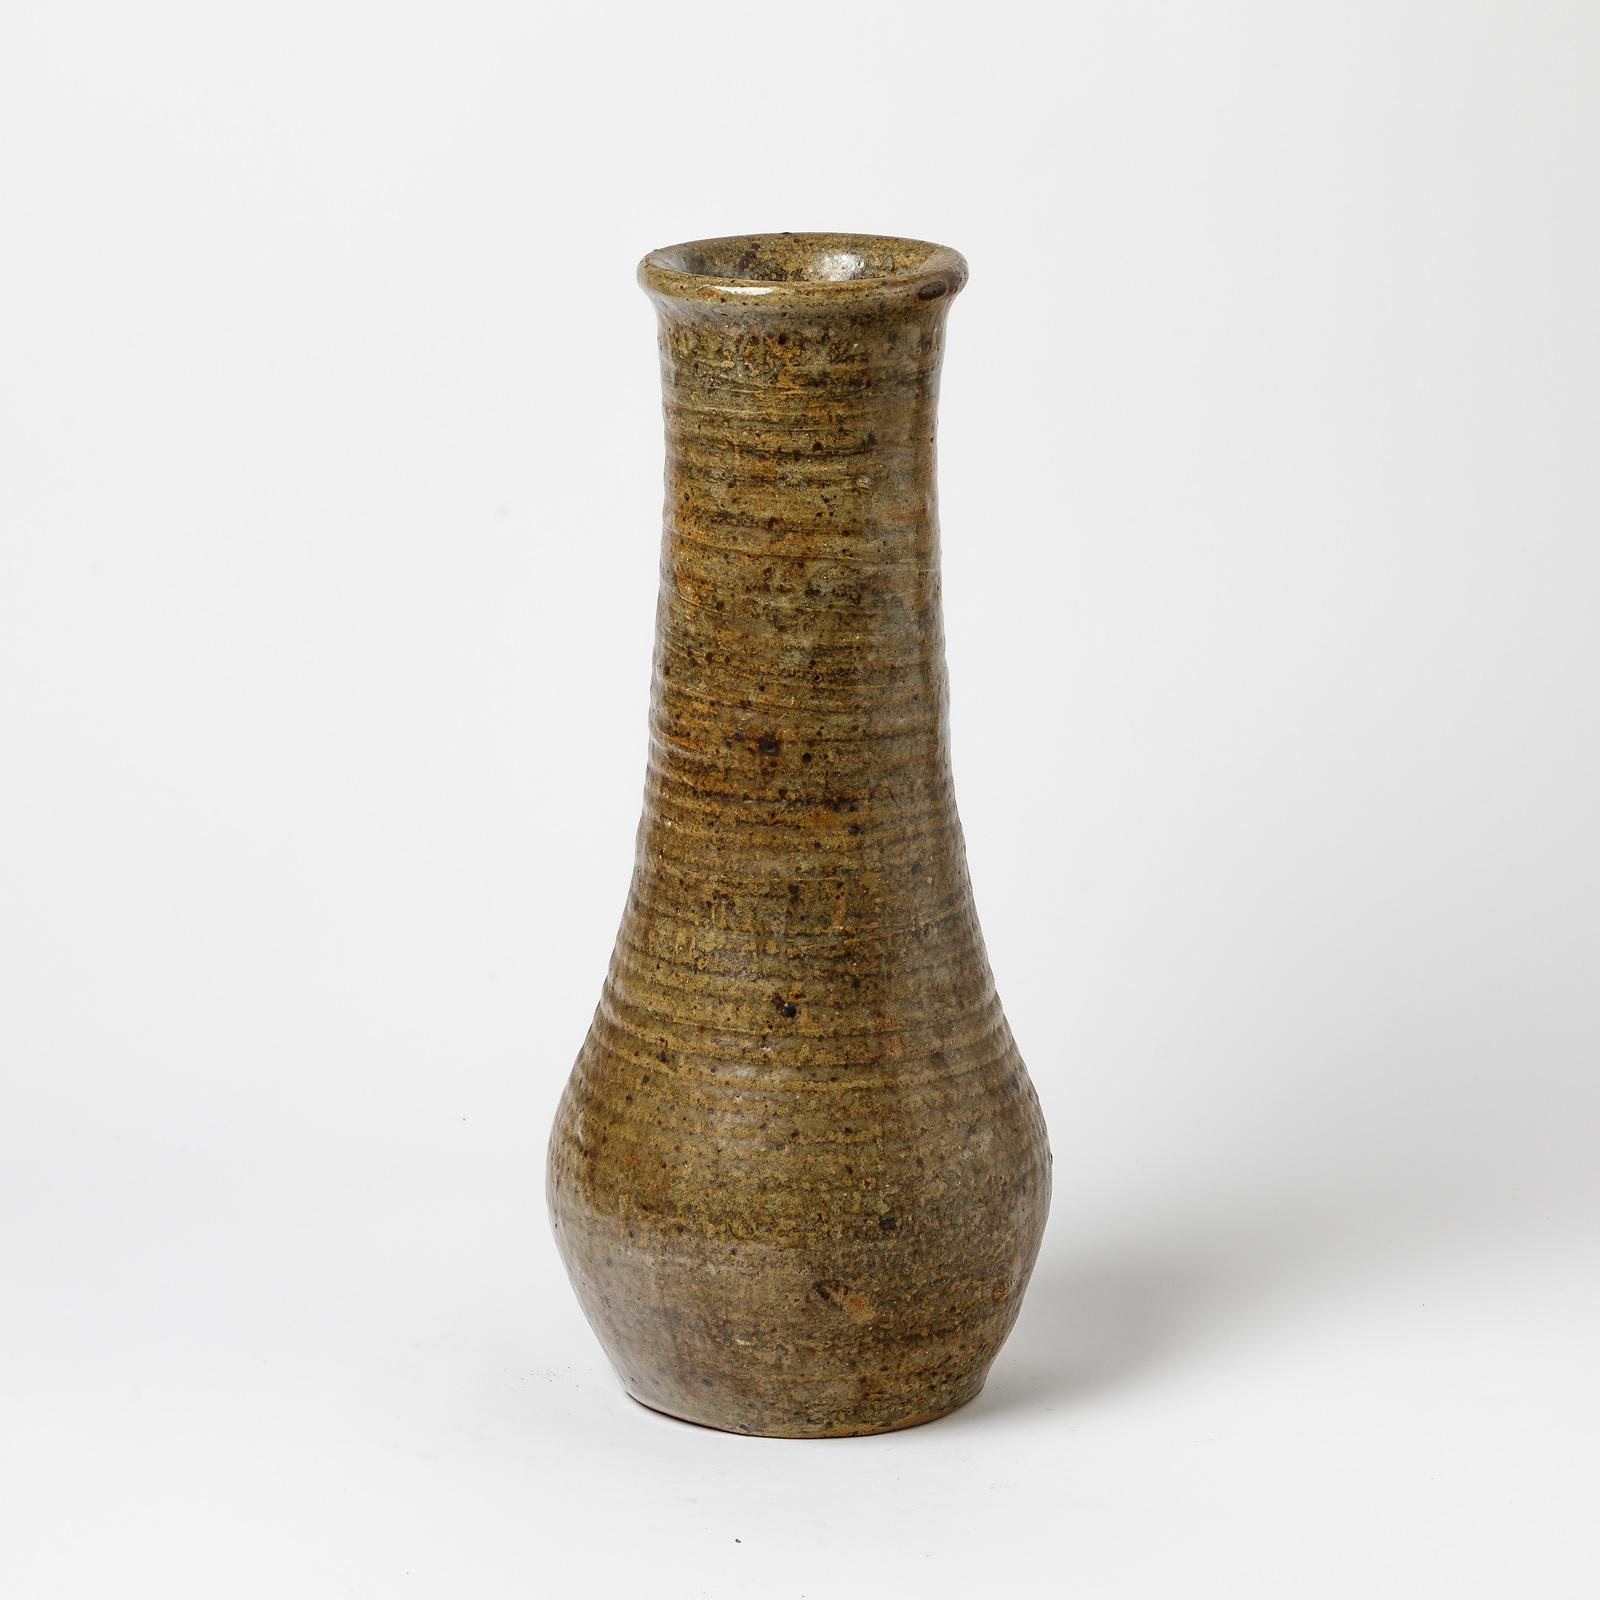 Un vase en céramique d'Alexandre Foucher à La Borne.
Conditions d'origine parfaites.
Signé sous conditions.
Circa 1970-1980.